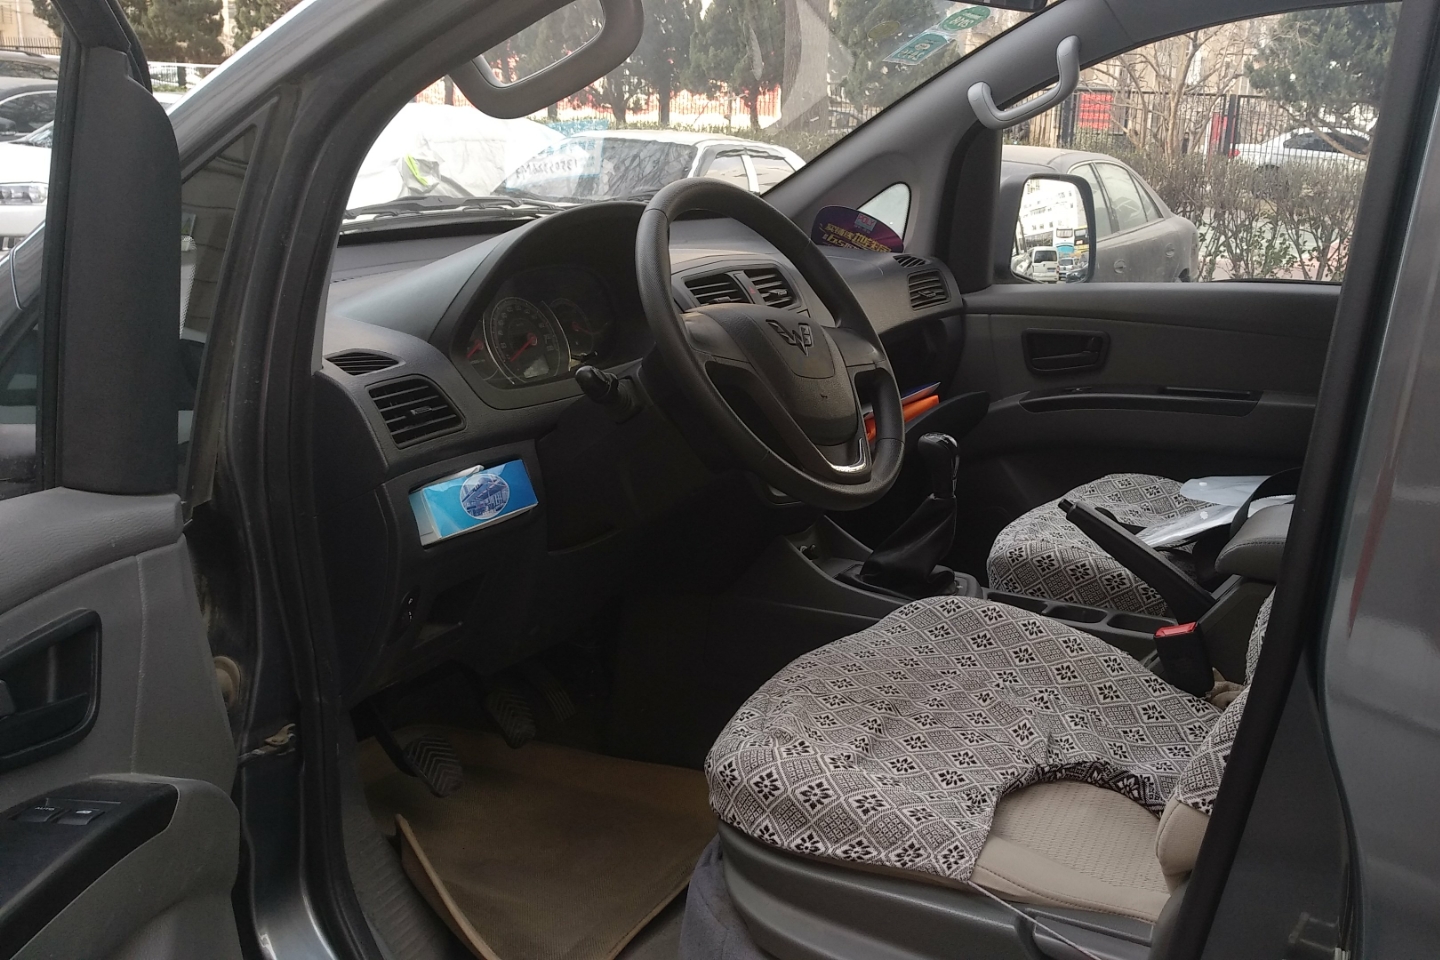 五菱汽车-五菱征程 2015款 1.8l舒适型lj479qe2